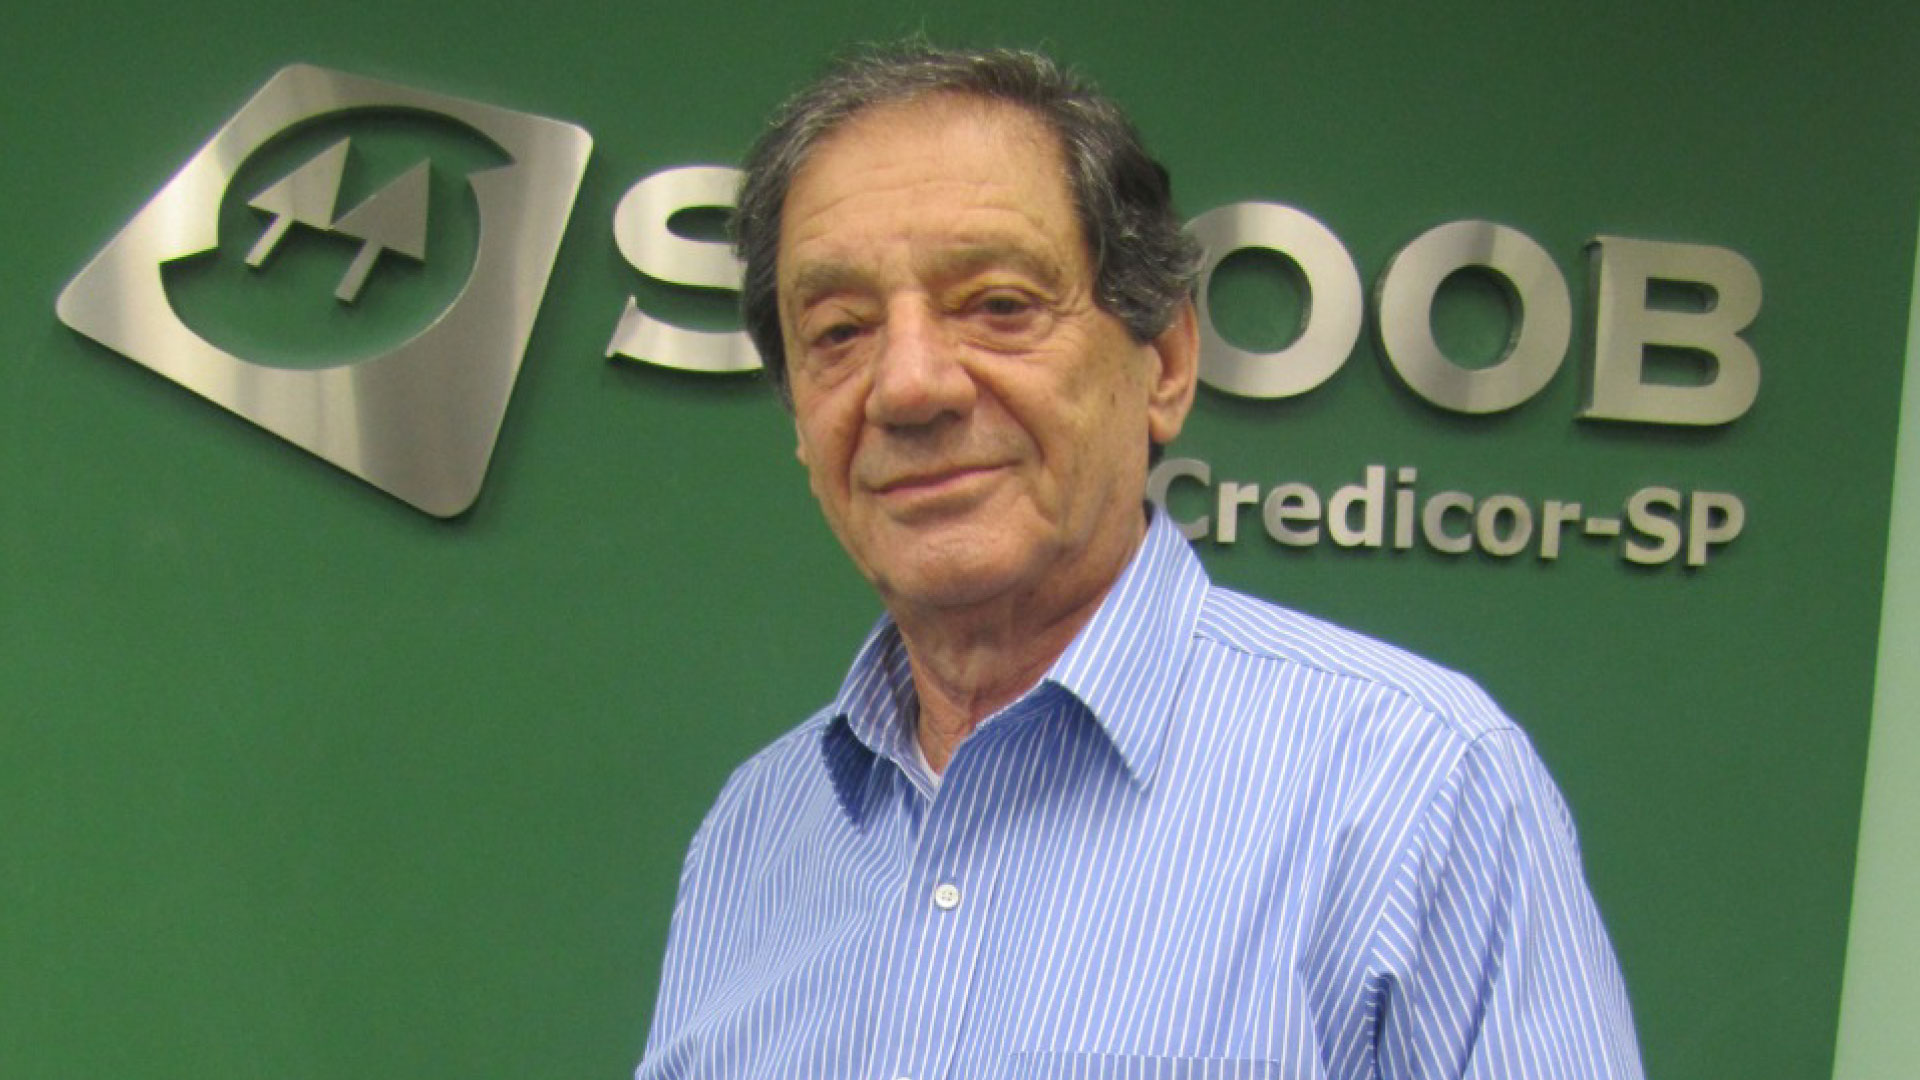 Luiz Ioels é presidente da Sicoob Credicor-SP / Divulgação